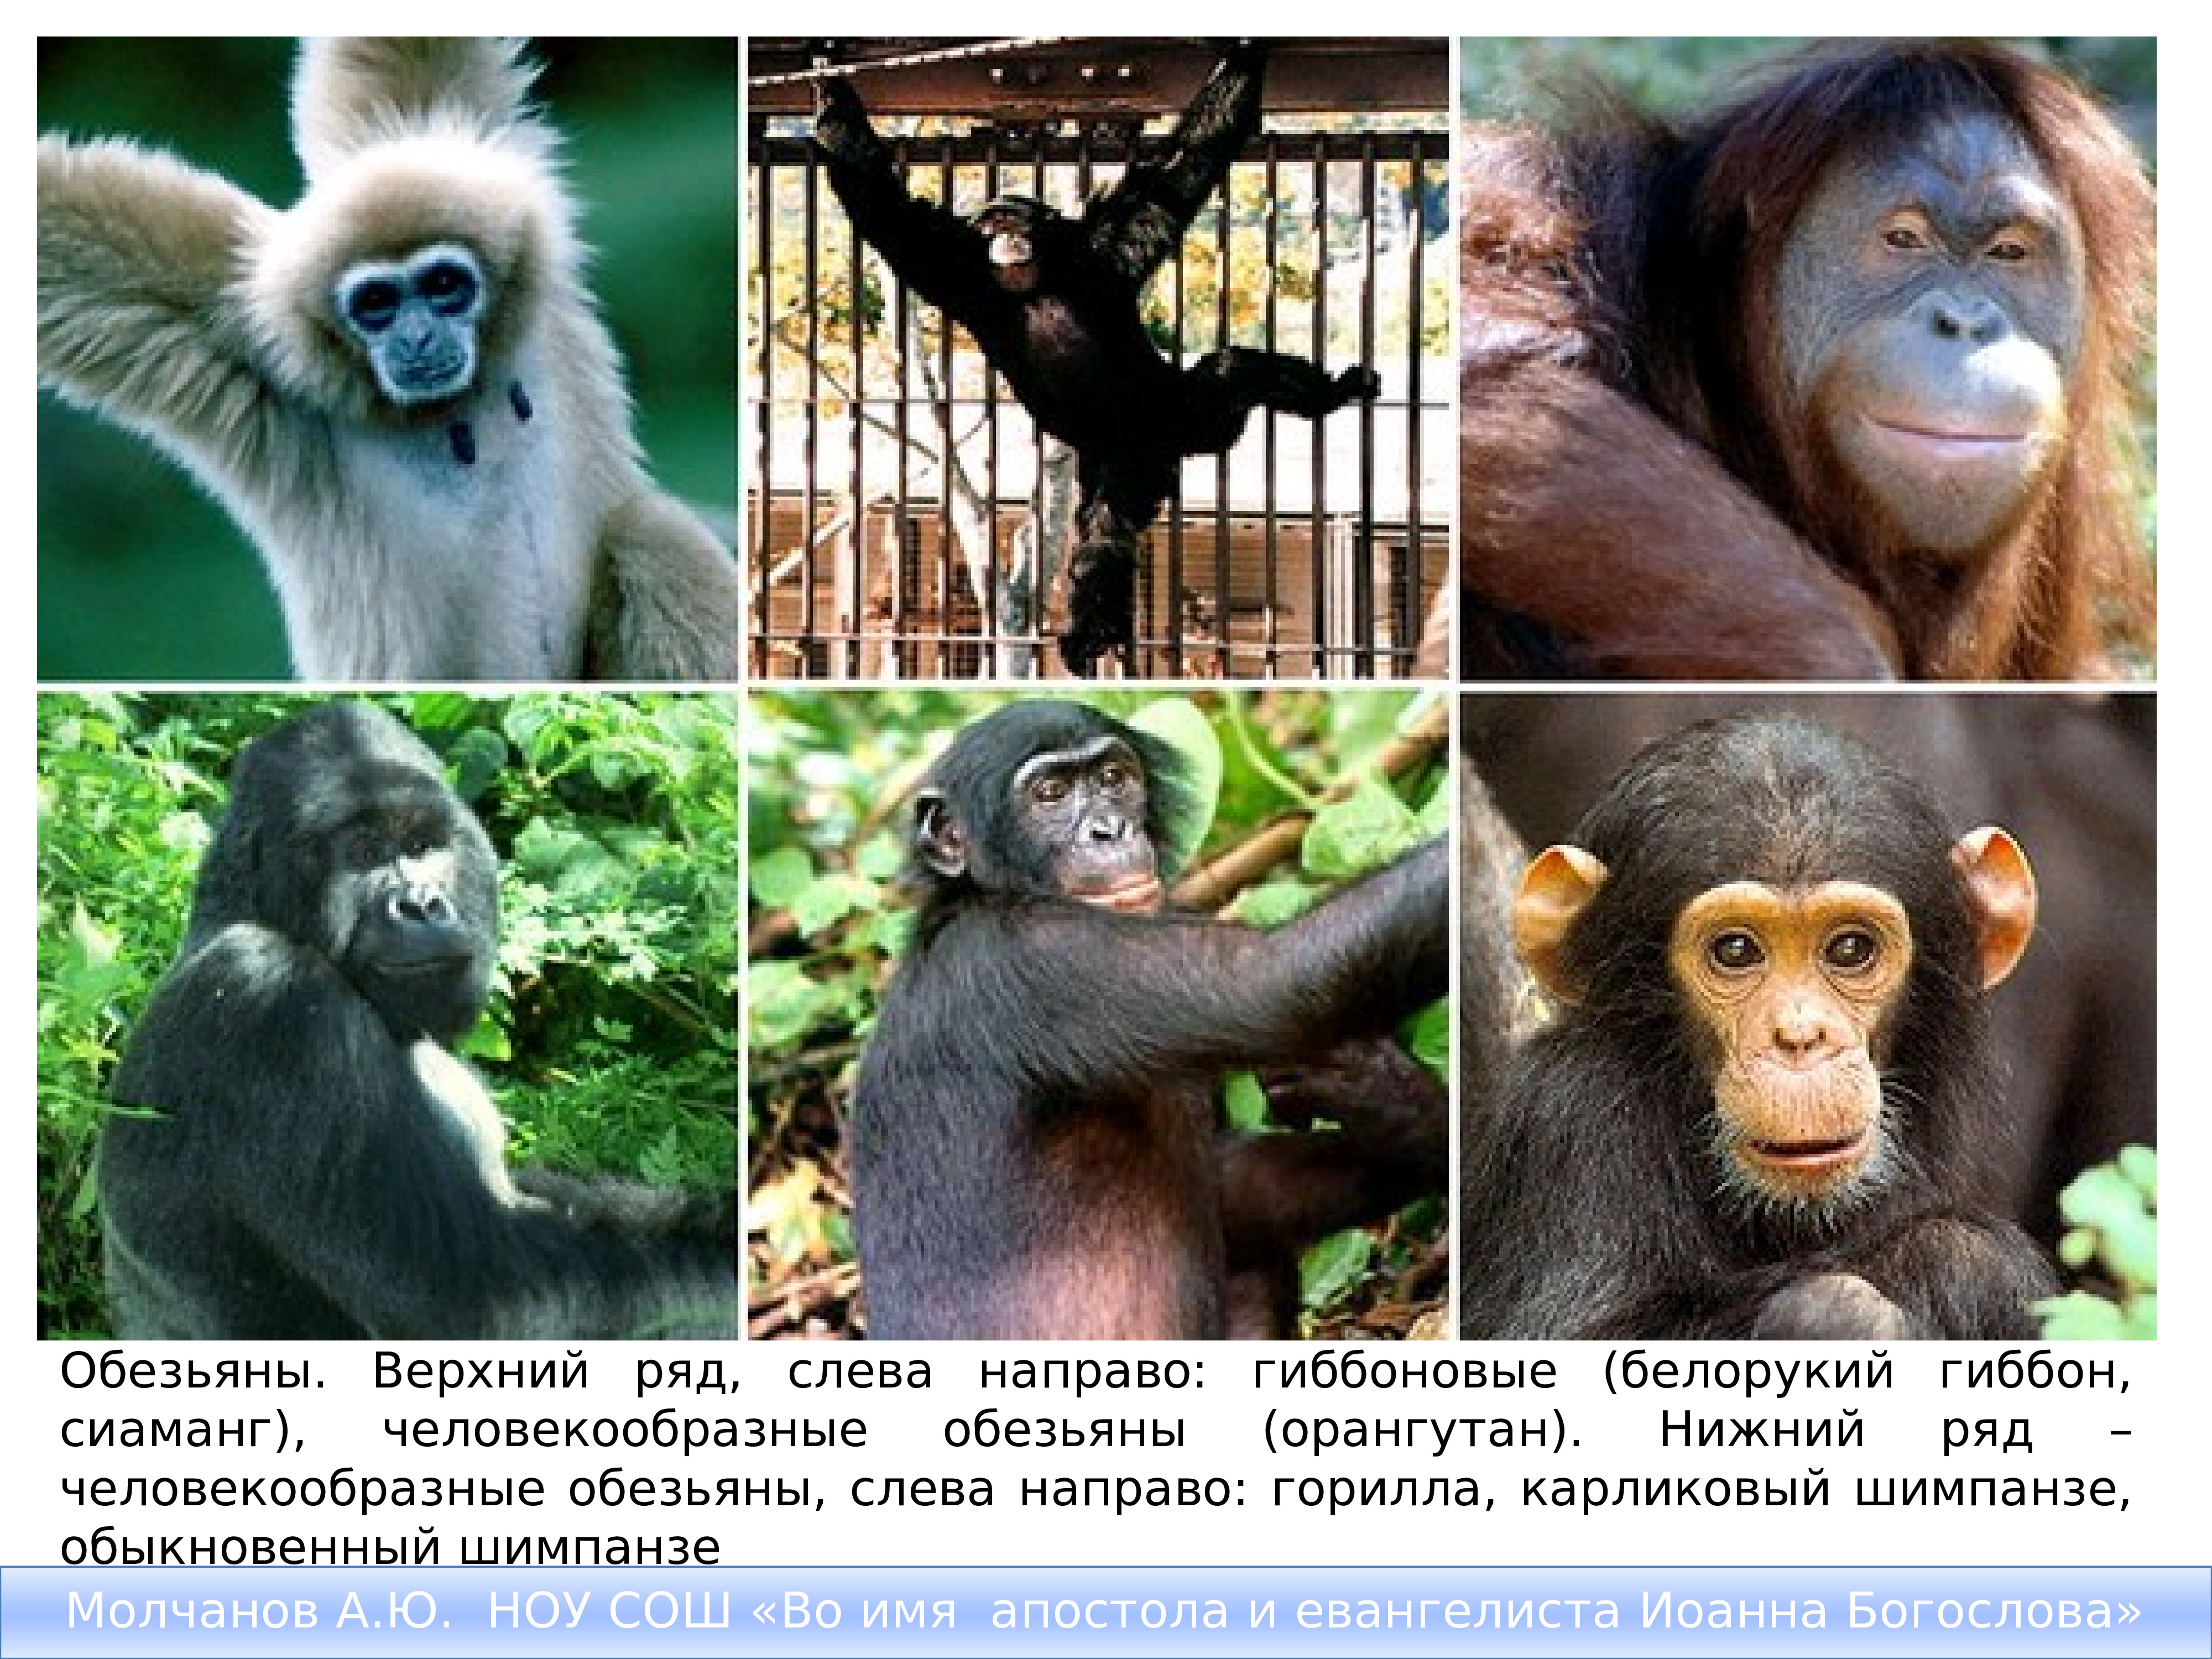 Верхняя обезьян. Белорукий Гиббон человекообразные обезьяны. Гиббоны орангутаны гориллы и шимпанзе. Шимпанзе, горилла, орангутанг, Гиббон. Гиббон орангутан горилла и шимпанзе человекообразные обезьяны.